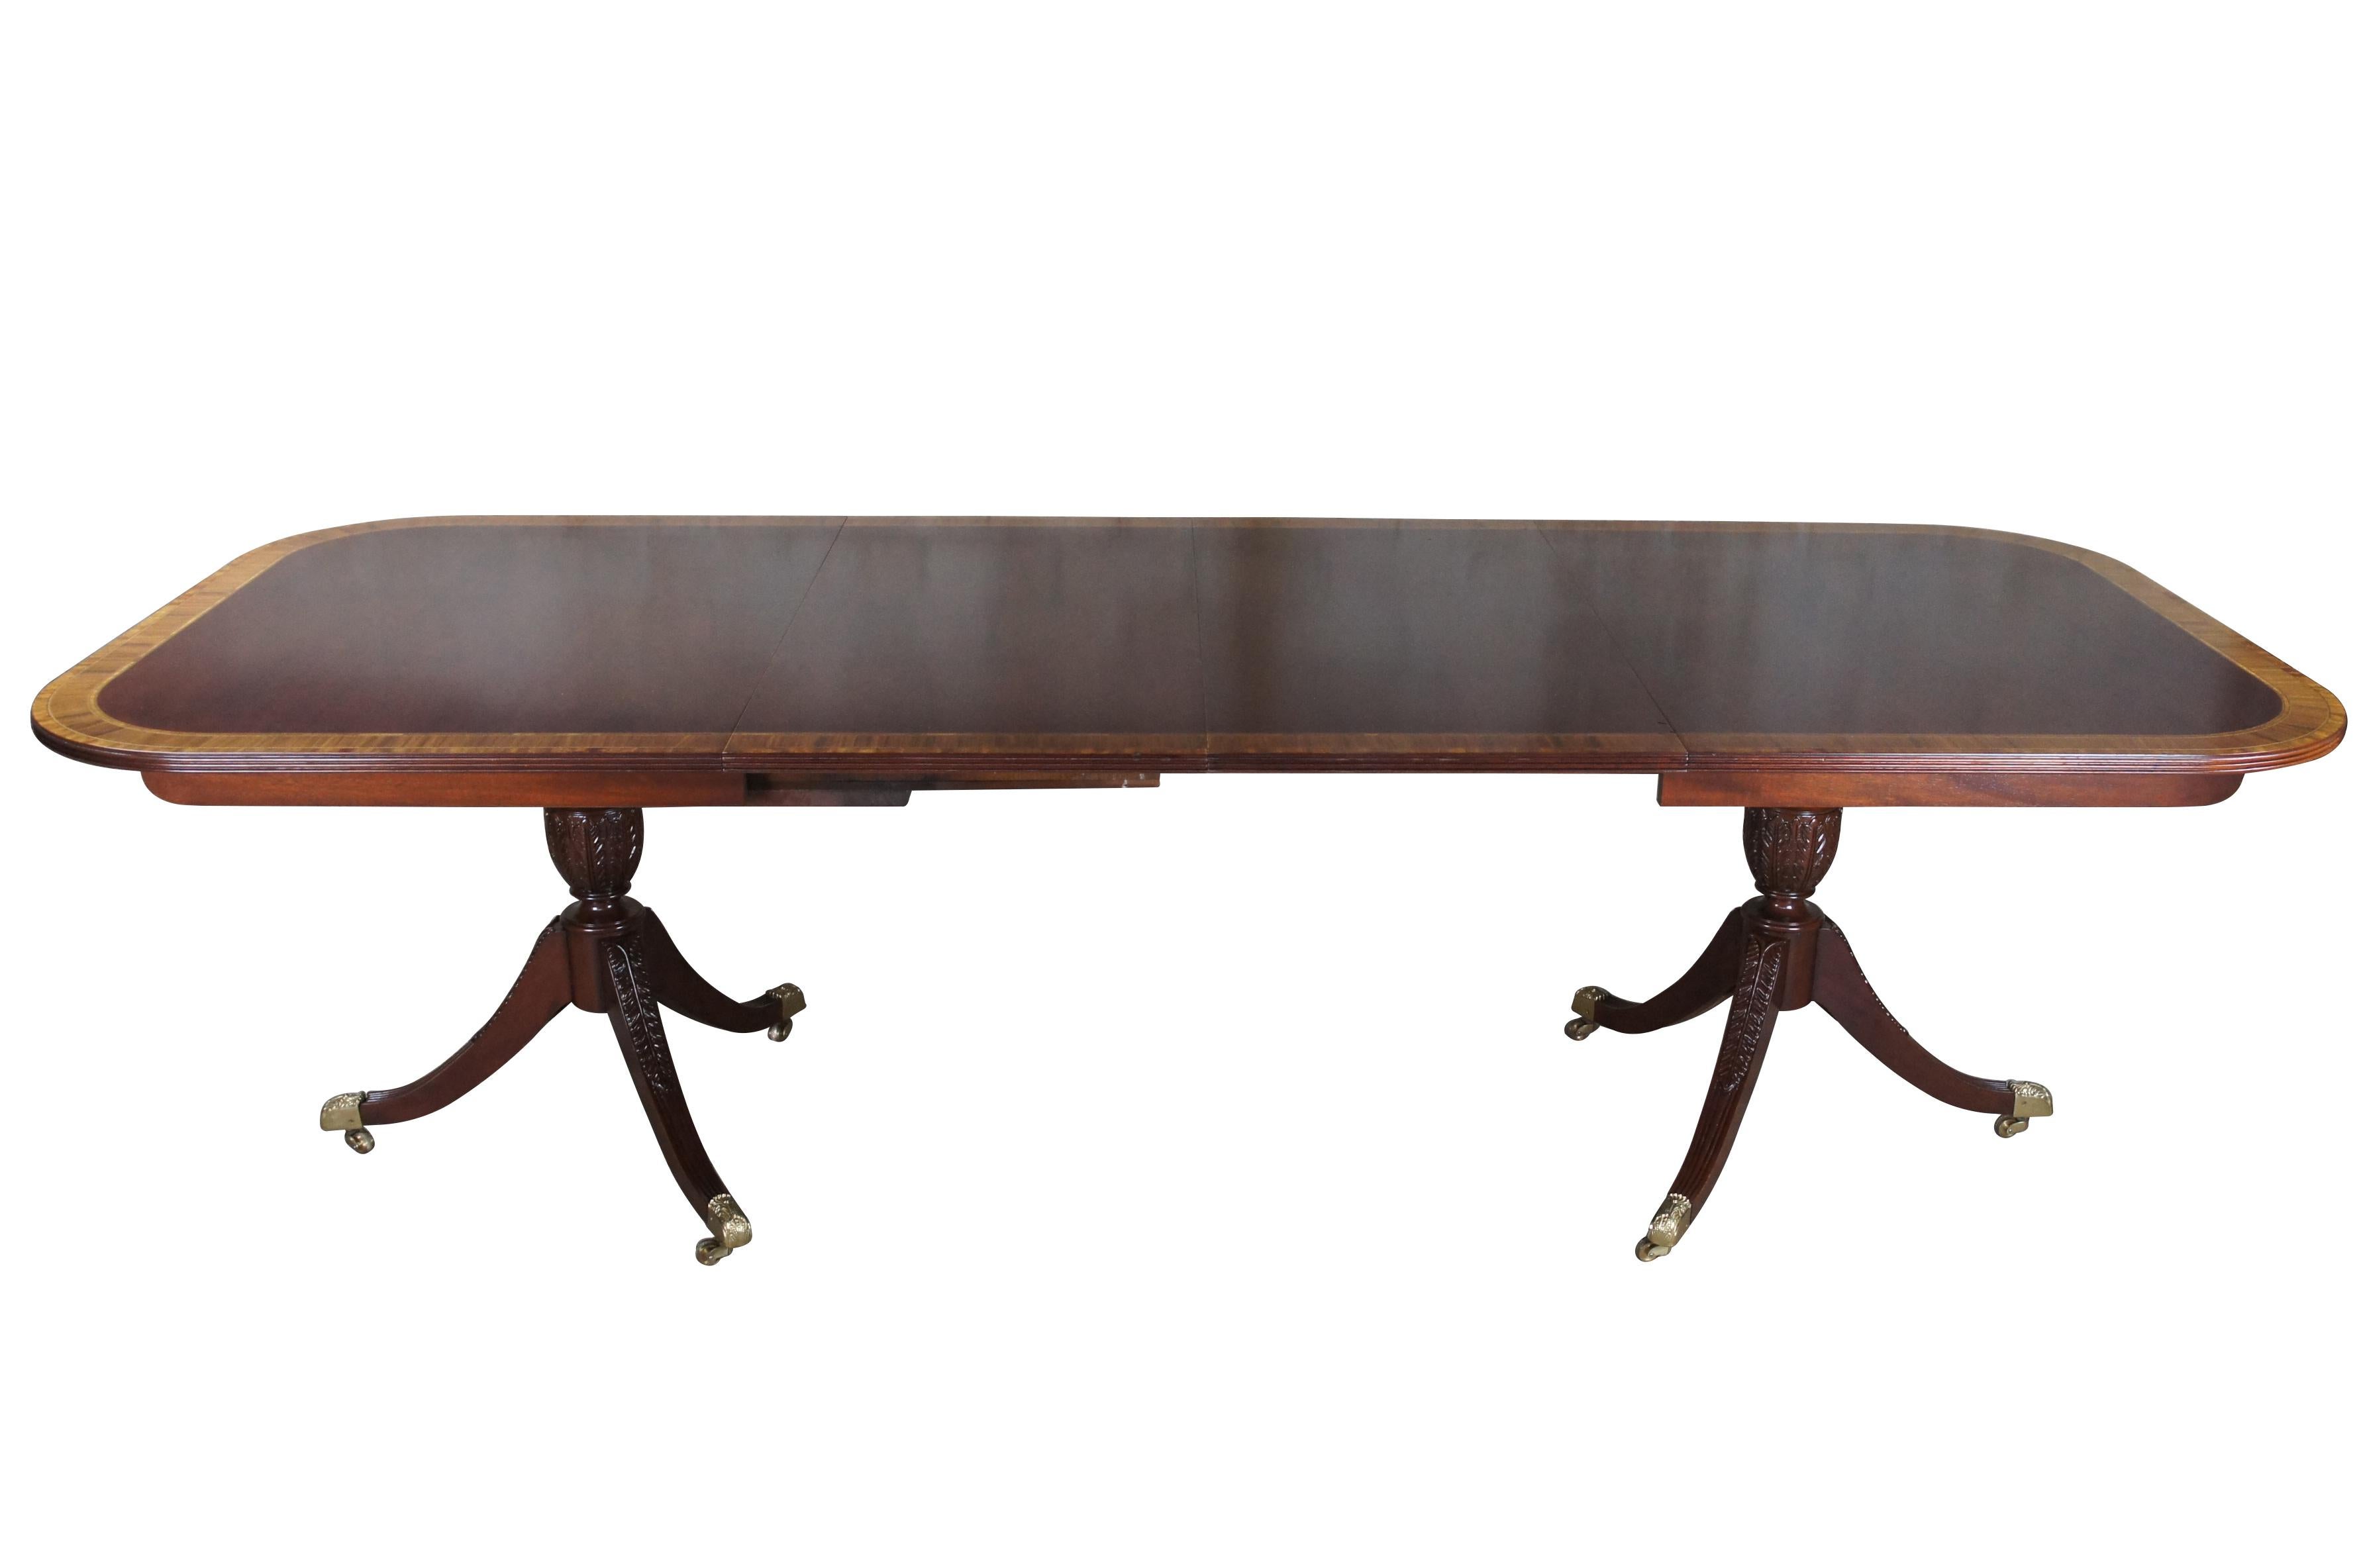 Baker Furniture Esstisch im englischen Regency-Stil. Beeindruckend ist die Mahagoni-Bandplatte mit zwei Erweiterungsblättern und Tischpads. Der Tisch ruht auf einem Dreibein-Doppelsockel aus Mahagoni mit formschönen, akanthusgeschnitzten Urnen über